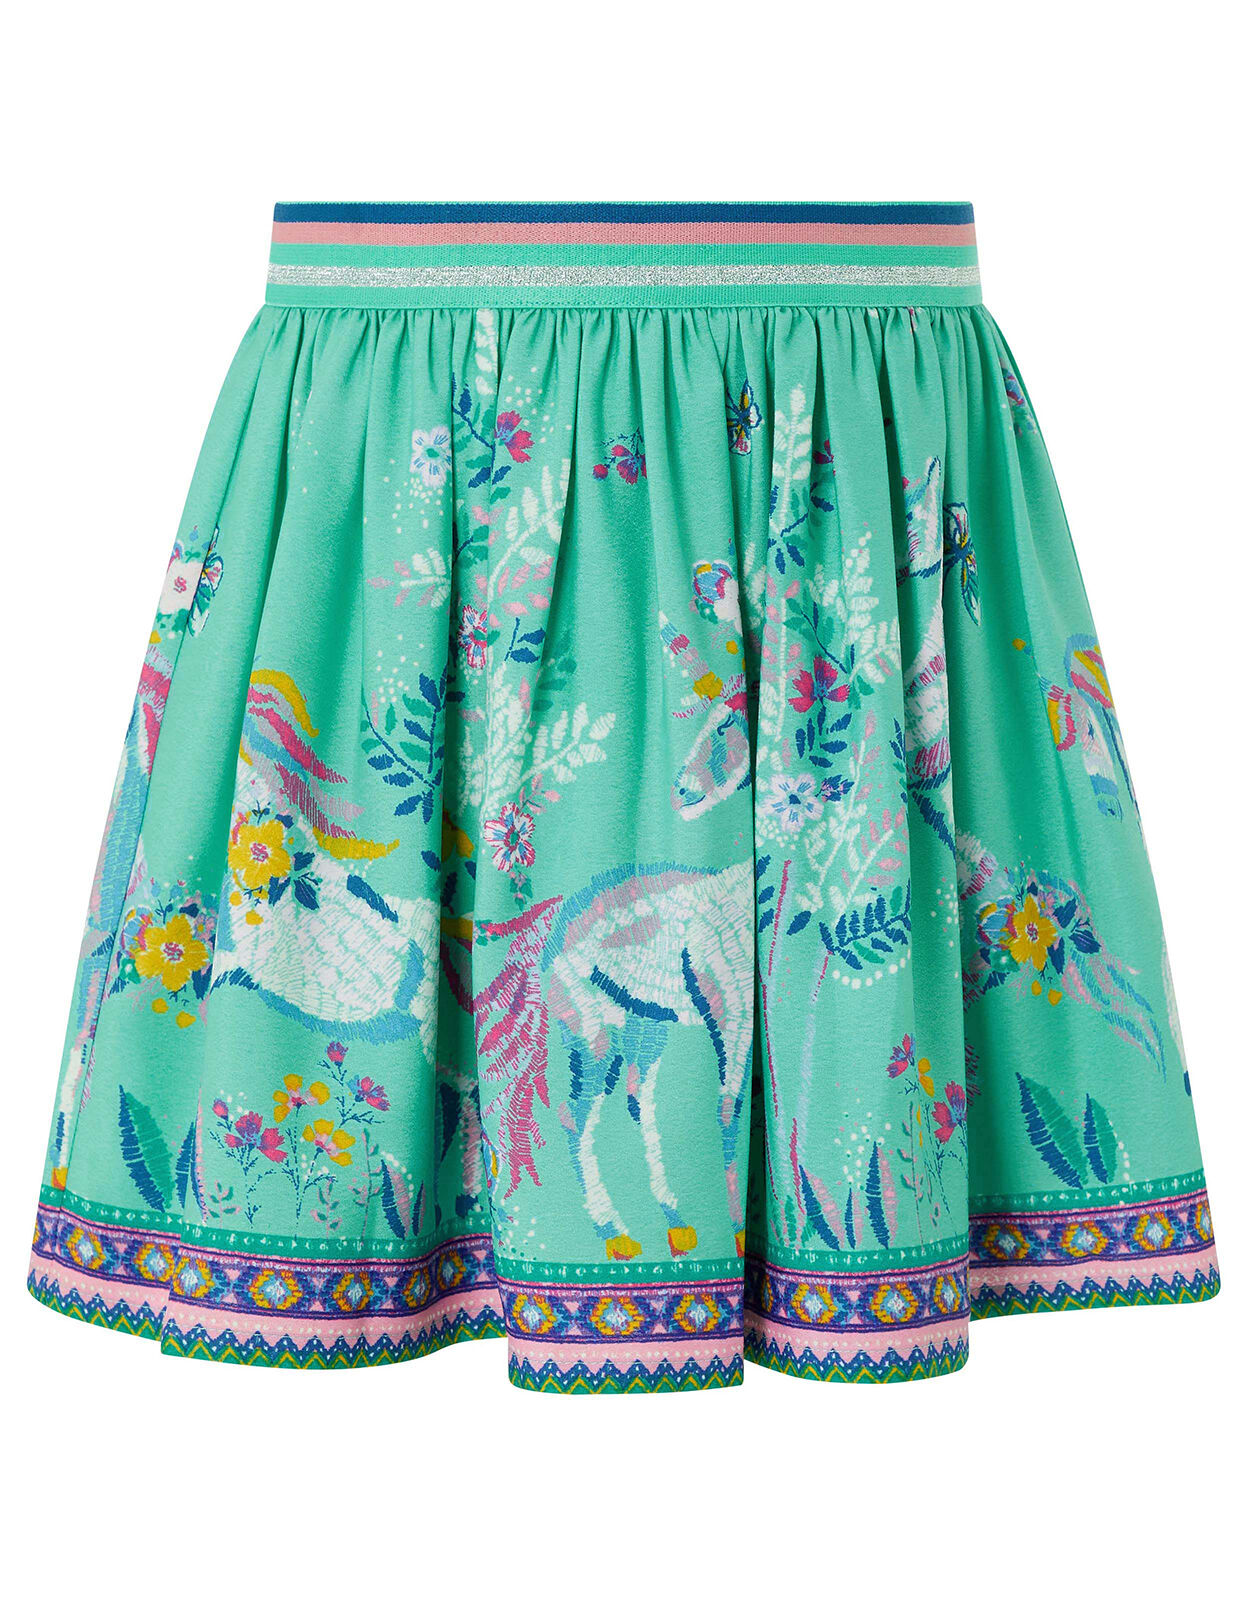 unicorn skirt